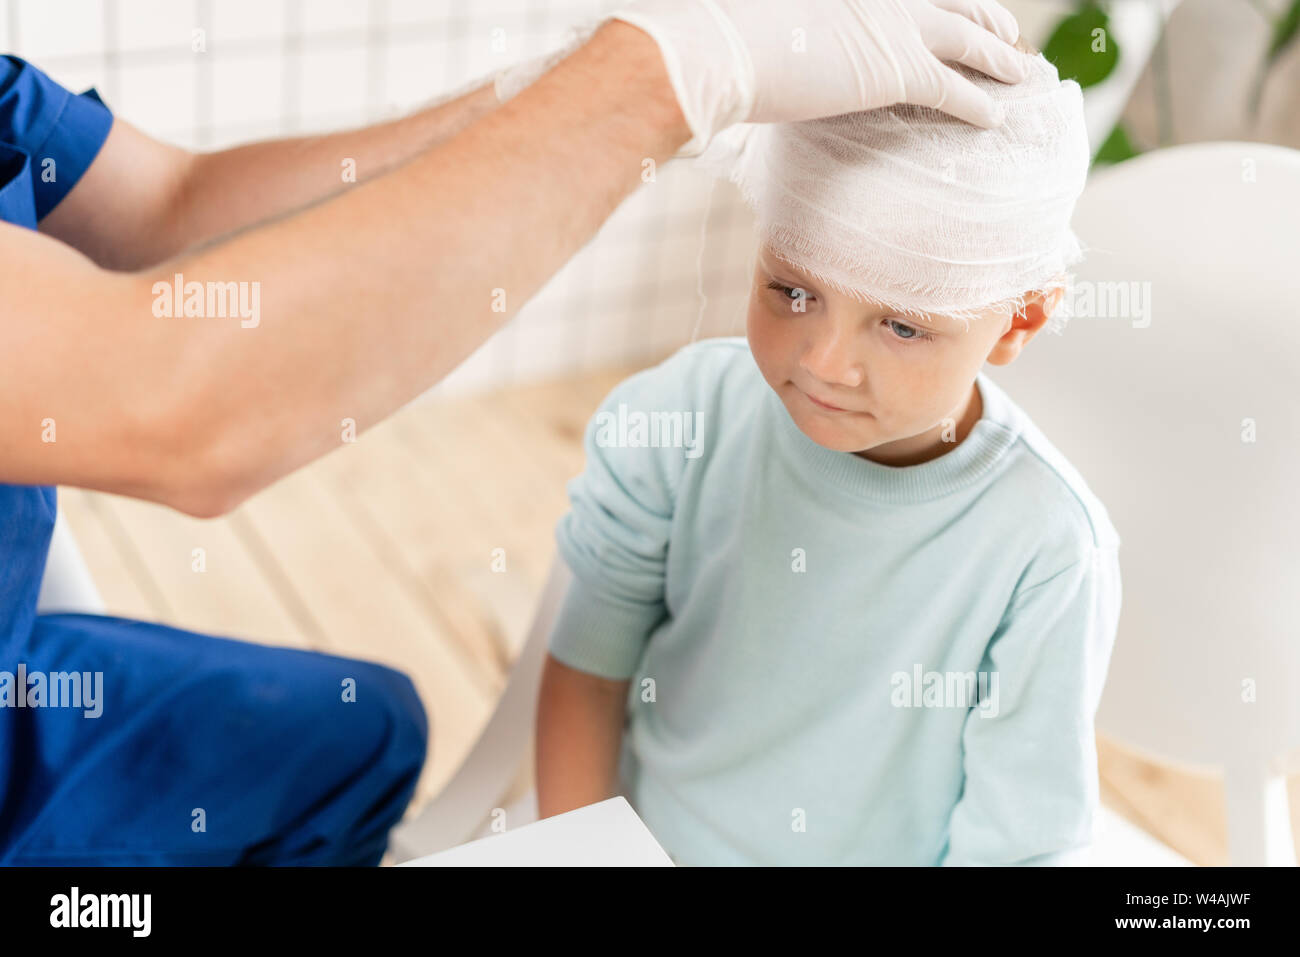 Médecin un garçon avec la tête bandée traumatisme dans la tête et un bandage élastique autour de sa tête Banque D'Images